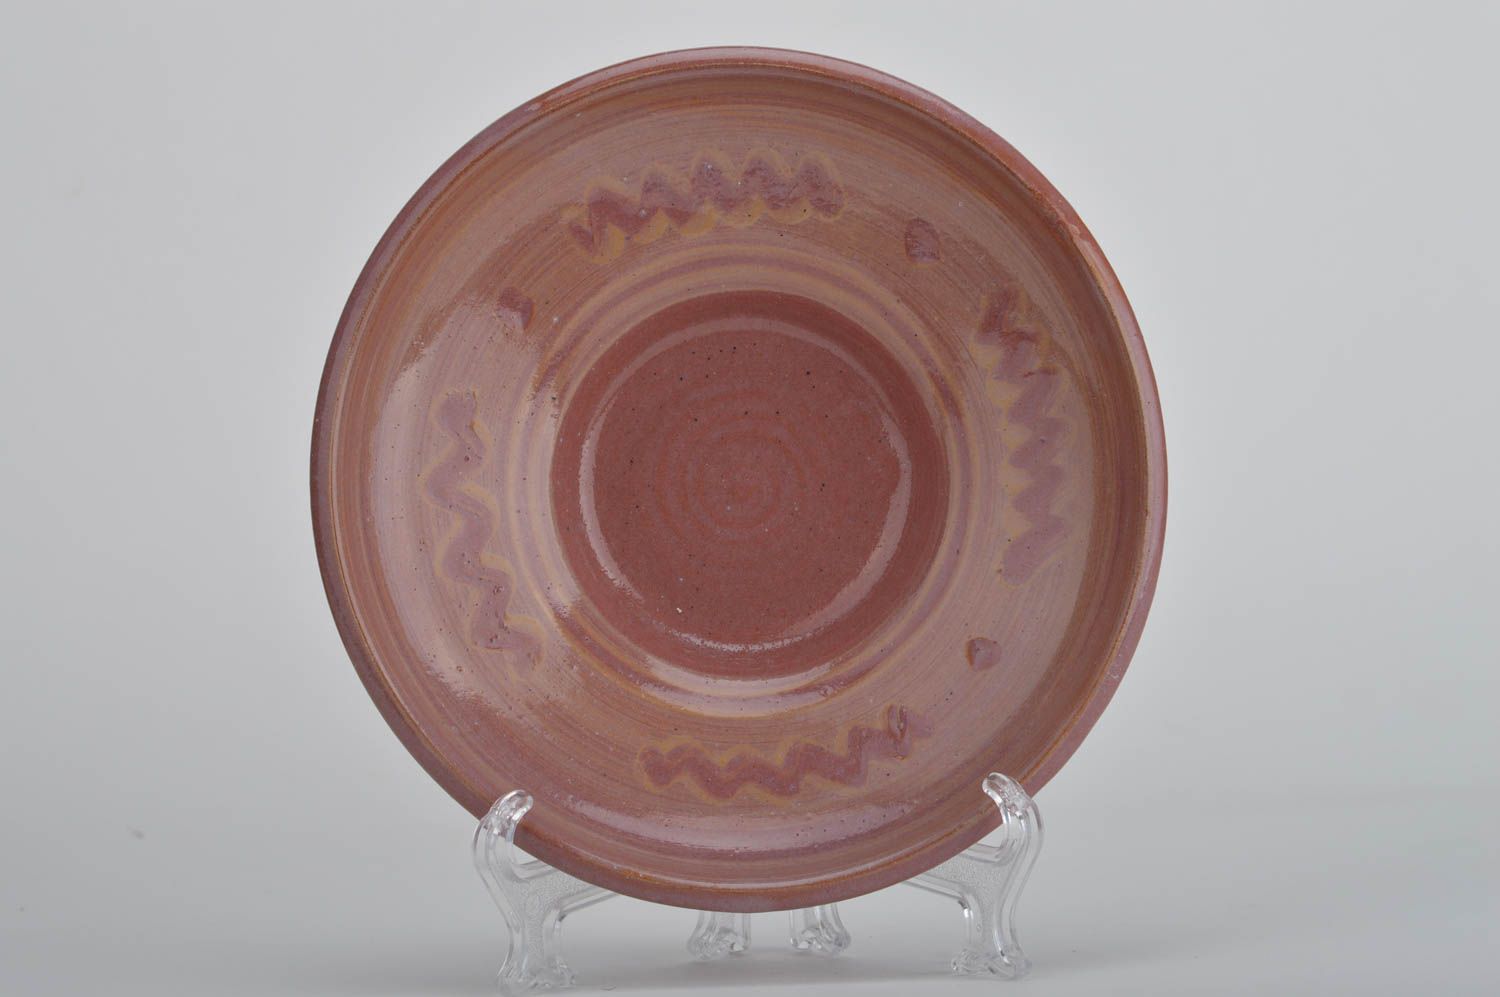 Декоративная тарелка из красной глины расписанная глазурью ручной работы фото 5